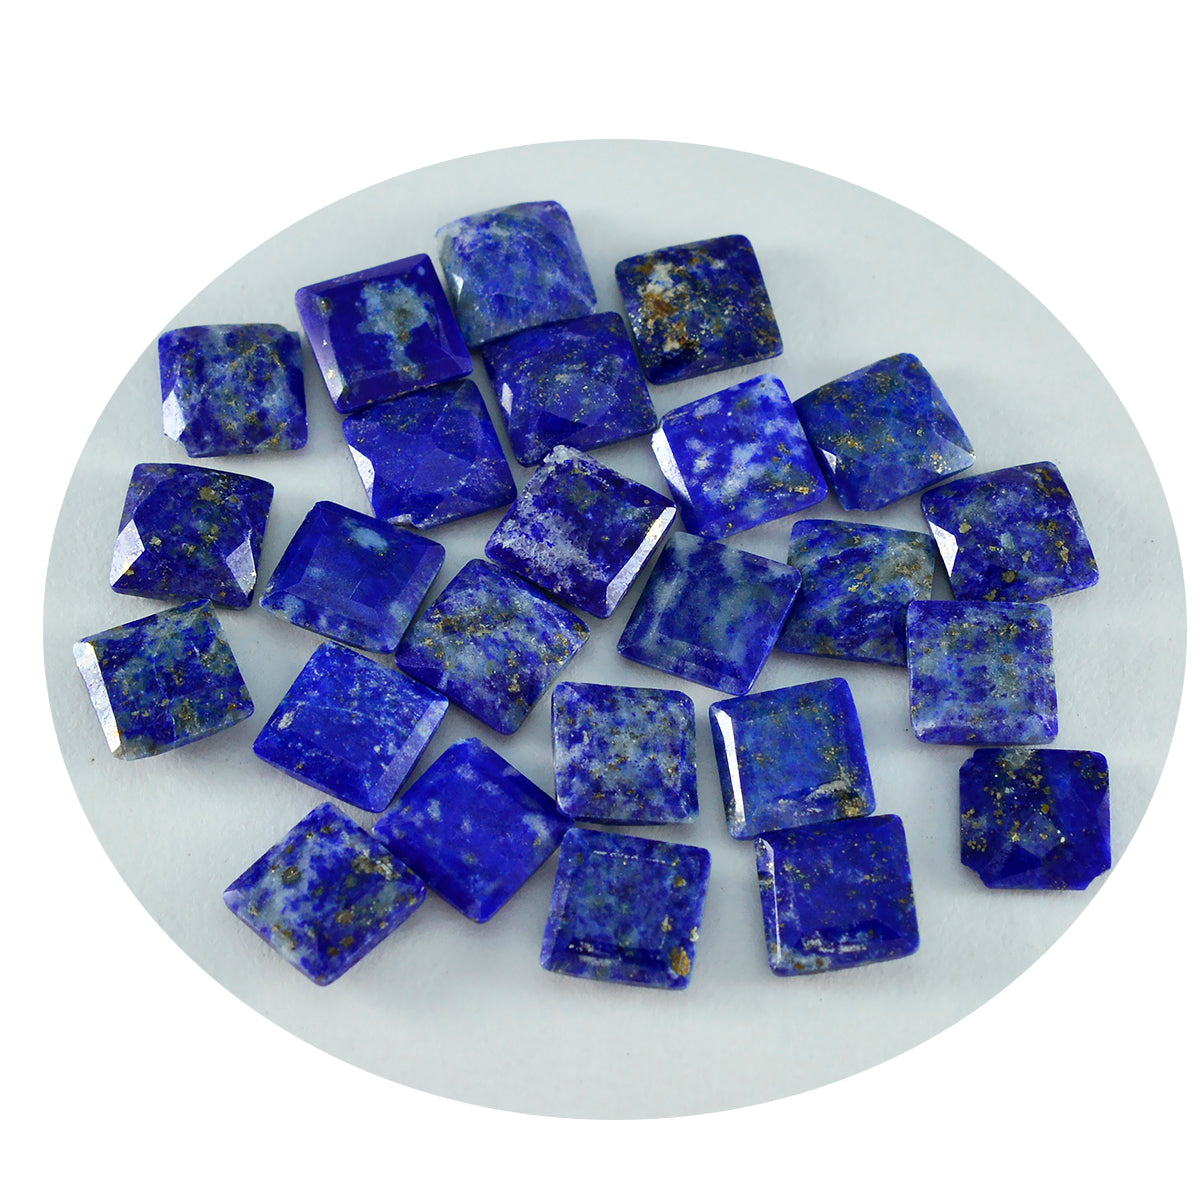 Riyogems 1 Stück echter blauer Lapislazuli, facettiert, 6 x 6 mm, quadratische Form, schön aussehender Qualitäts-Edelstein